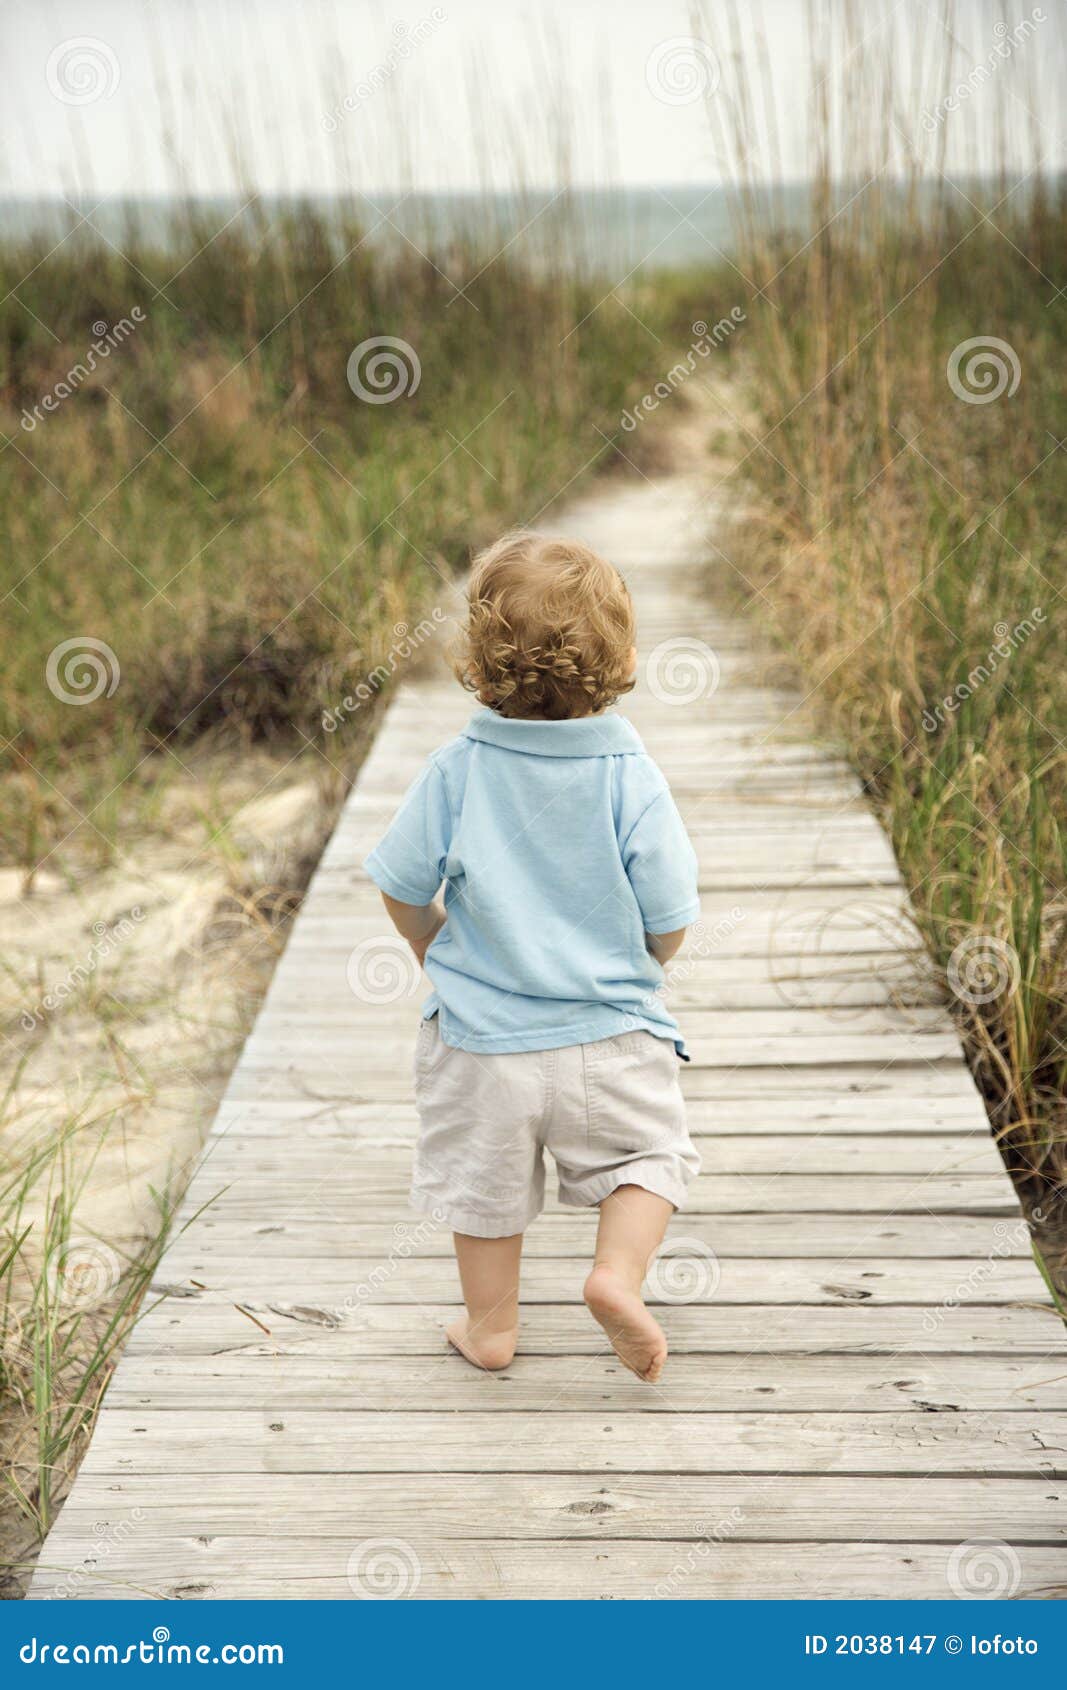 little boy walking down beach walkway 2038147